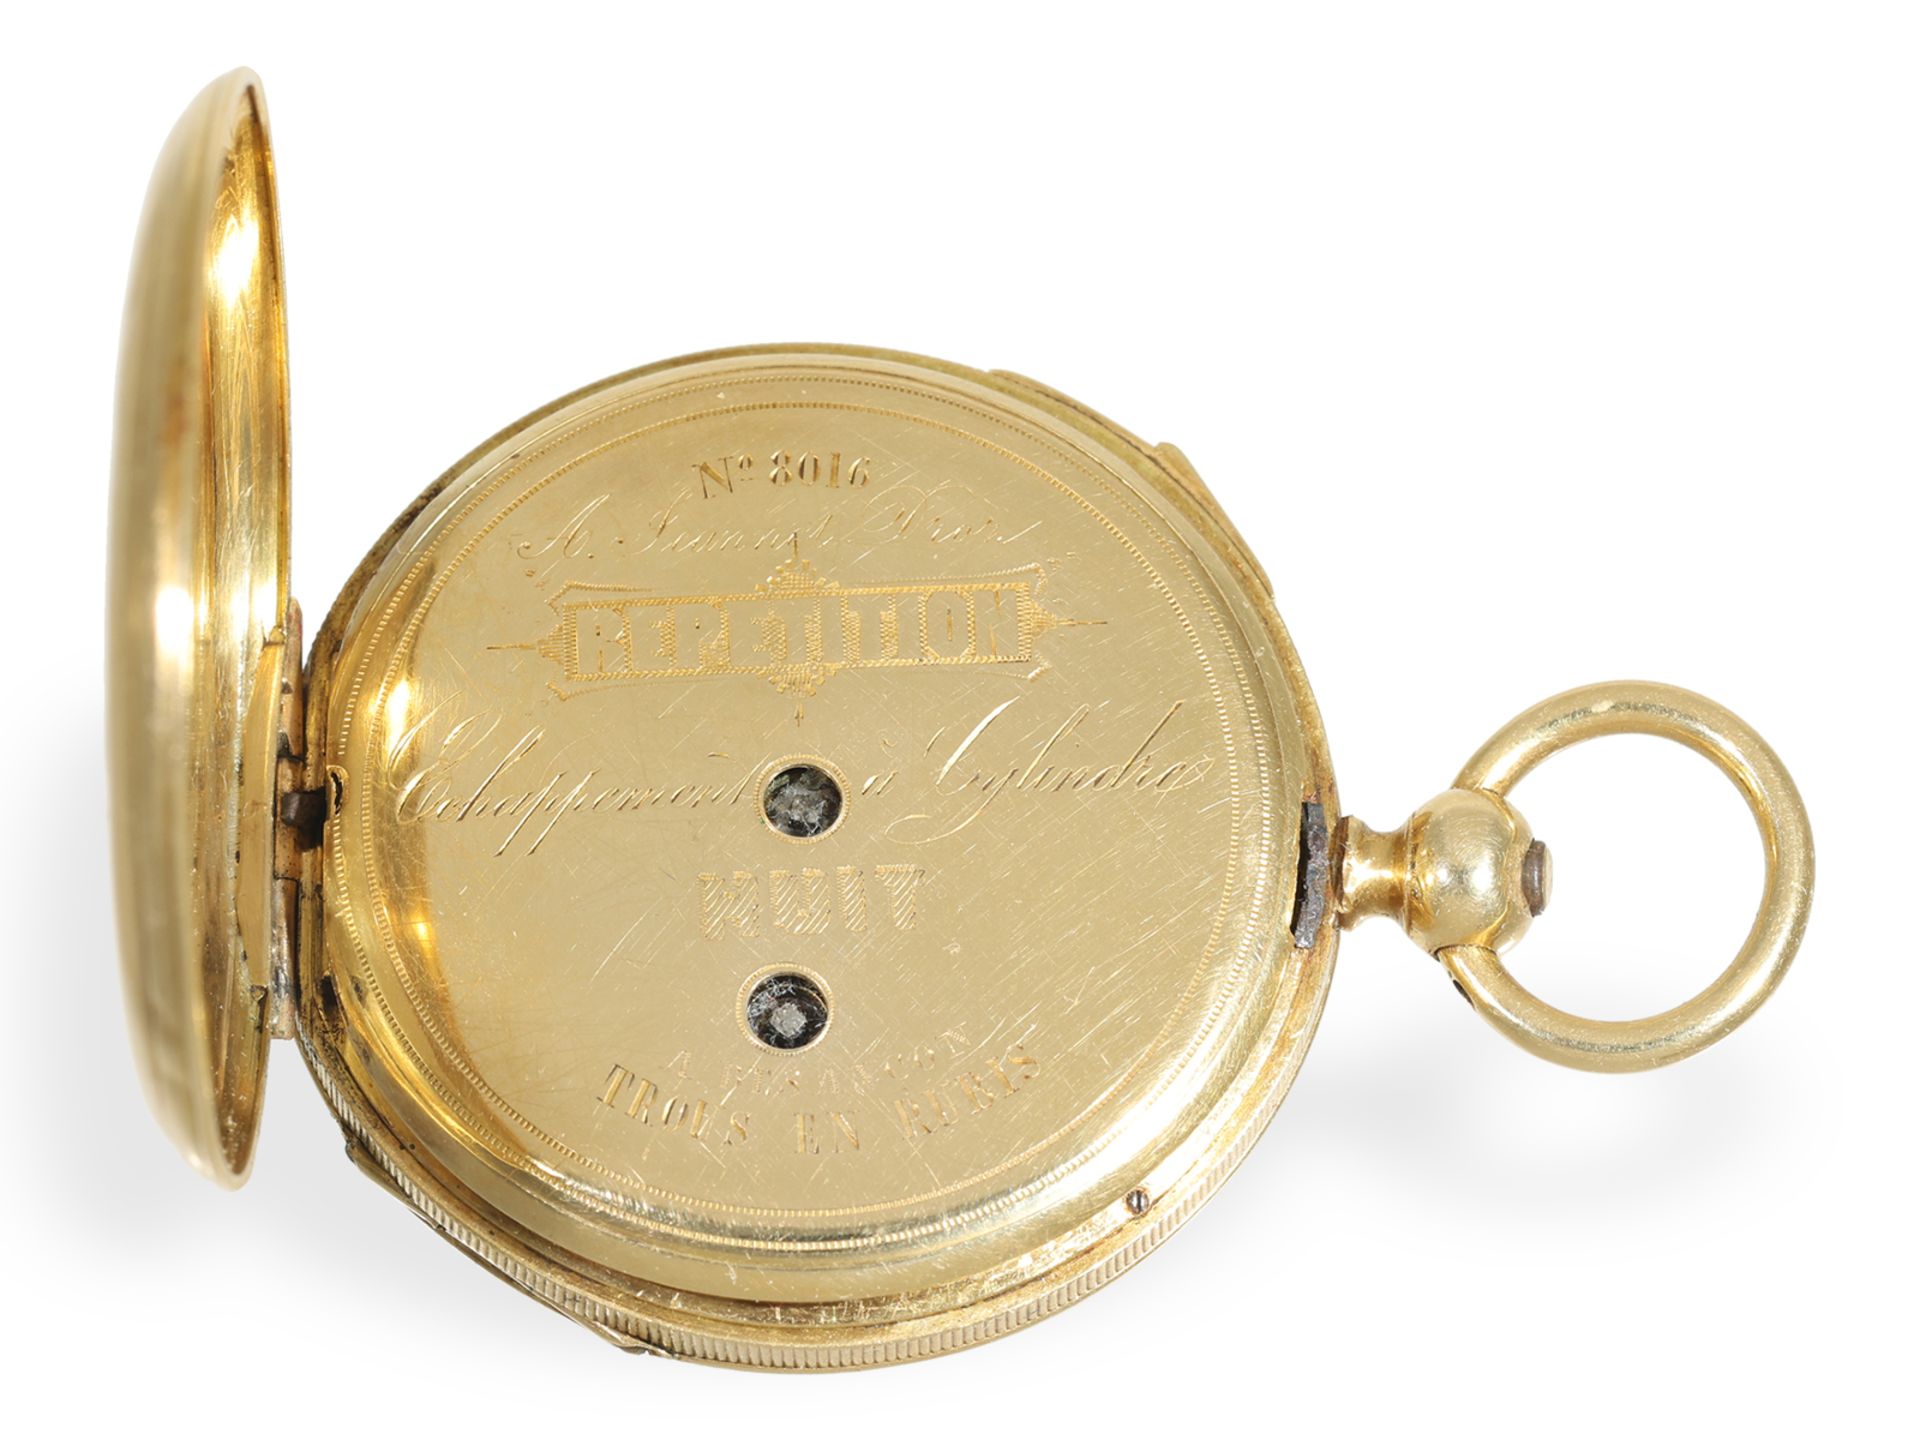 Taschenuhr: sehr seltene Damentaschenuhr mit Repetition, Jeannot Droz a Besancon ca. 1850 - Bild 7 aus 7